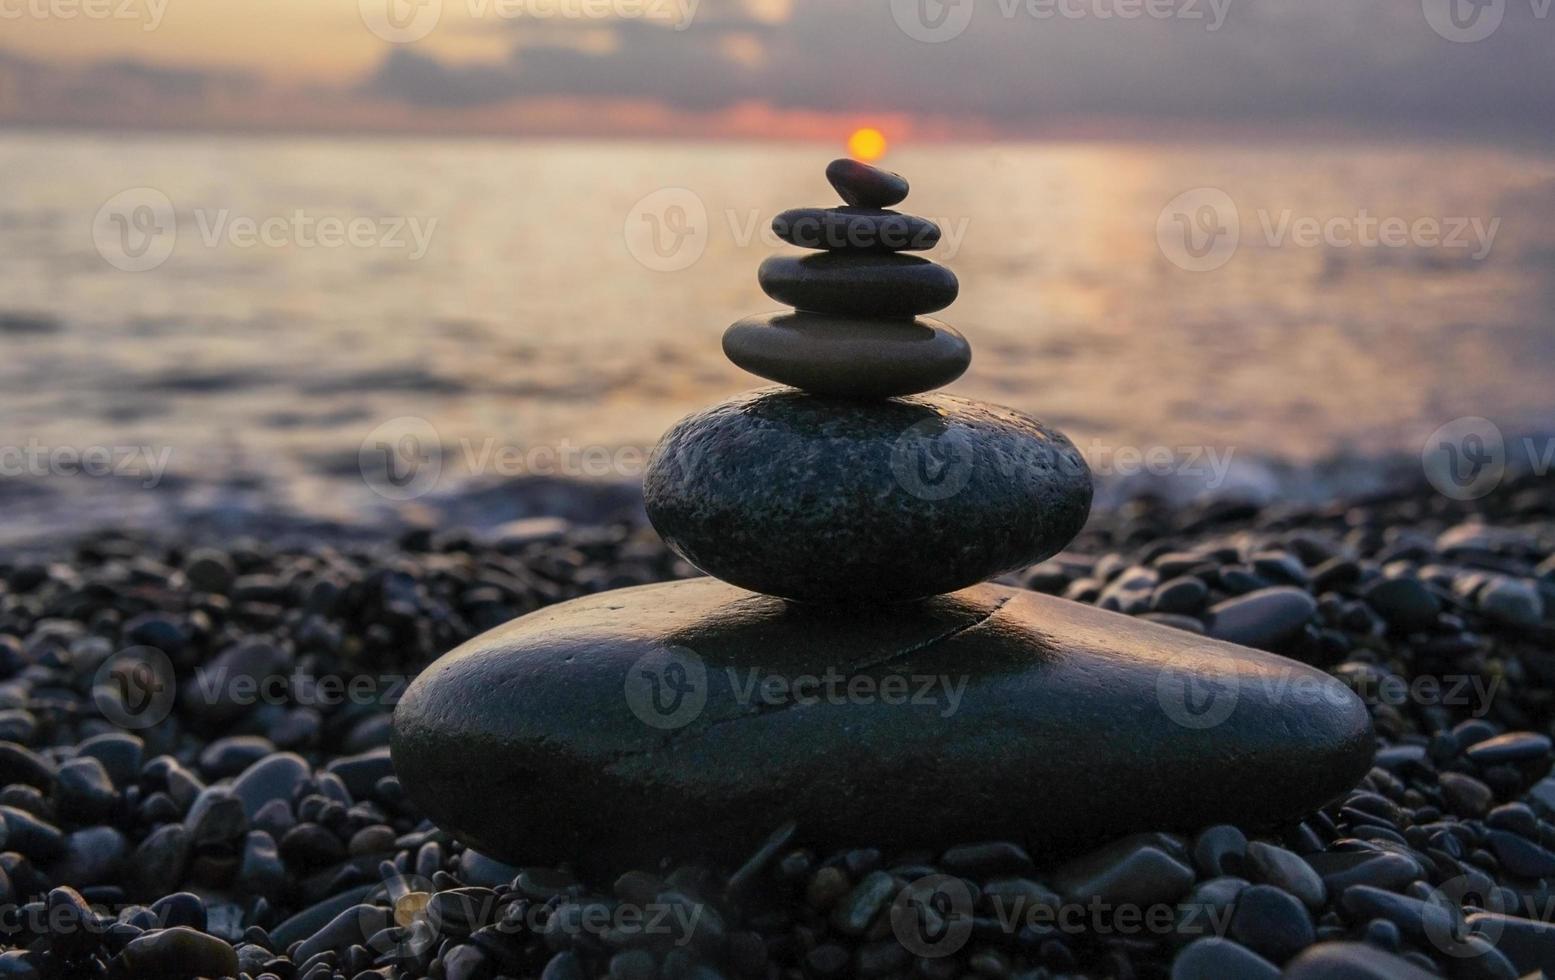 pyramid av sten stenar med Sol på topp mot bakgrund av hav och solnedgång himmel. zen stenar, meditation begrepp foto